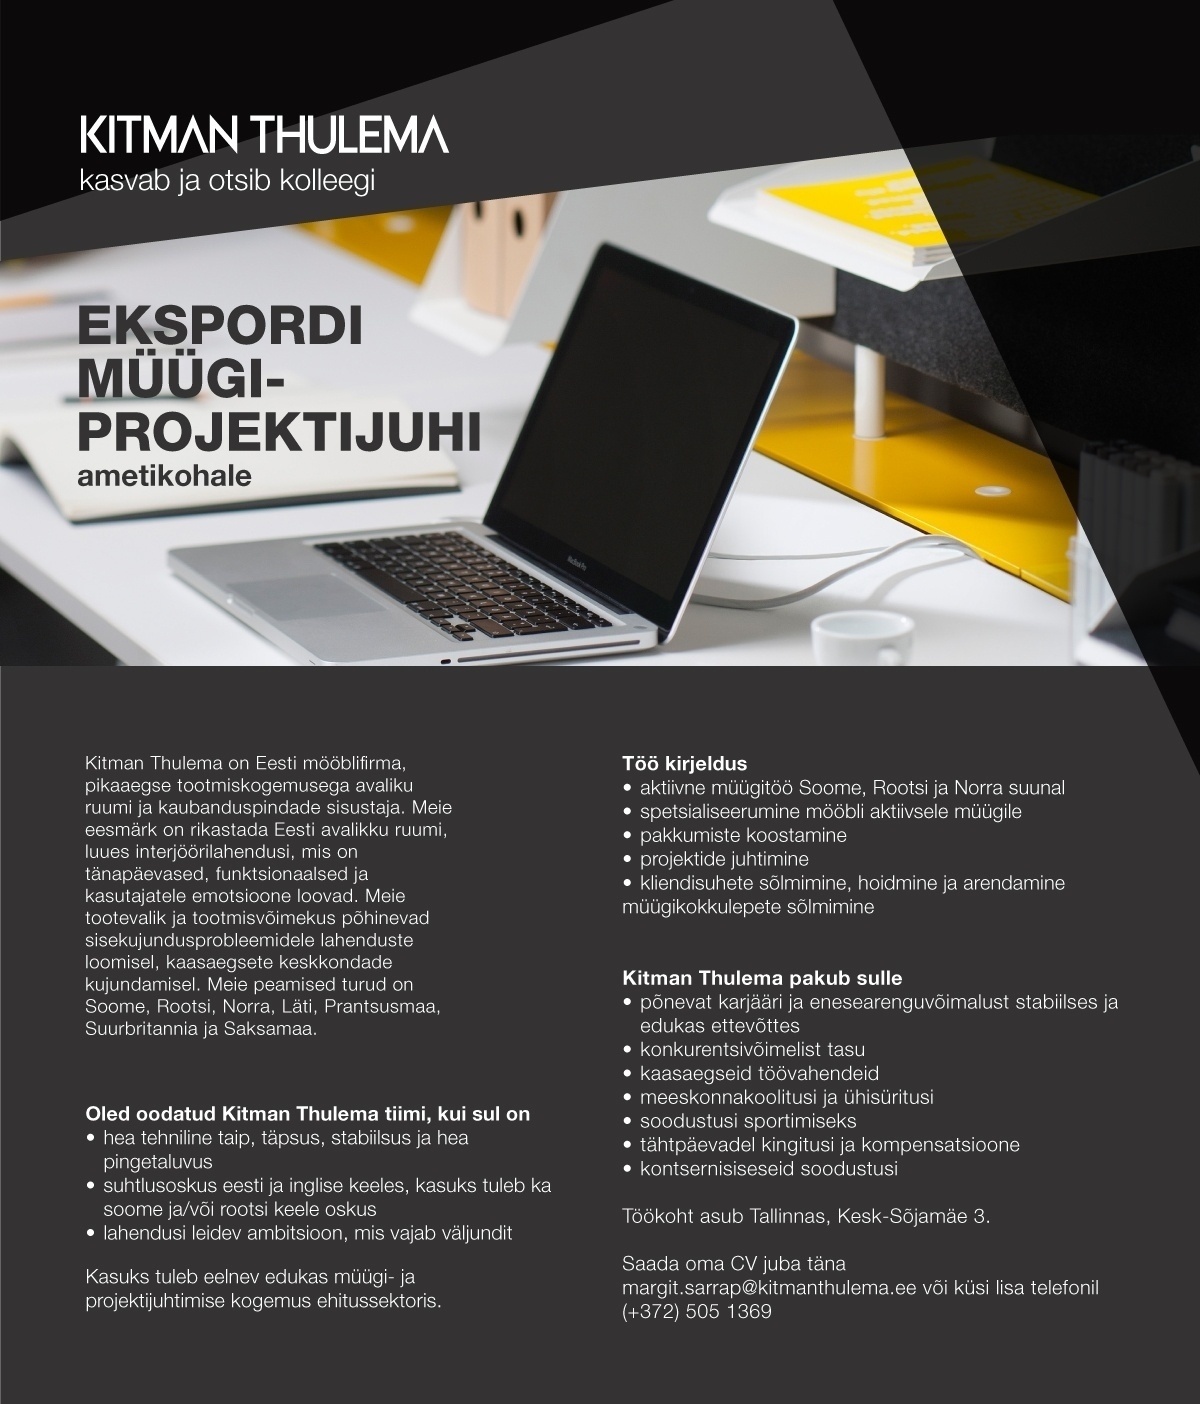 Kitman Thulema AS Ekspordi müügi-projektijuht